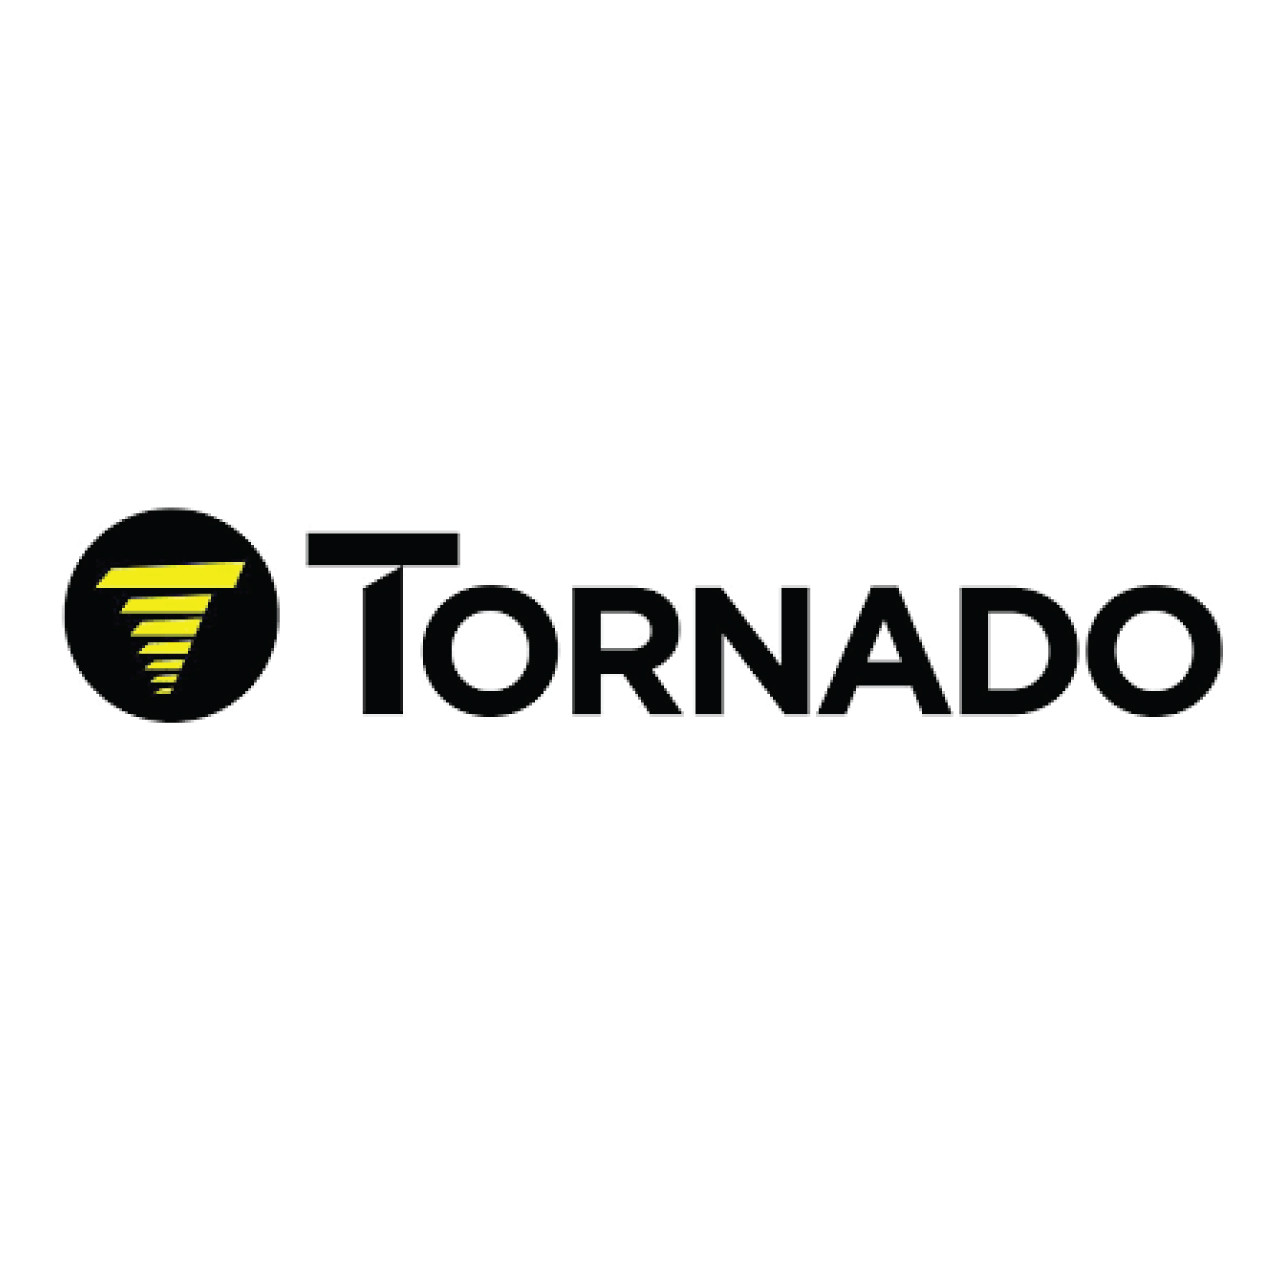 Tornado TC-M6 - TACONY CENTRAL VAC MOTOR ASSY 7.2 LAMB TNAGENTIAL B6 C6 PIC